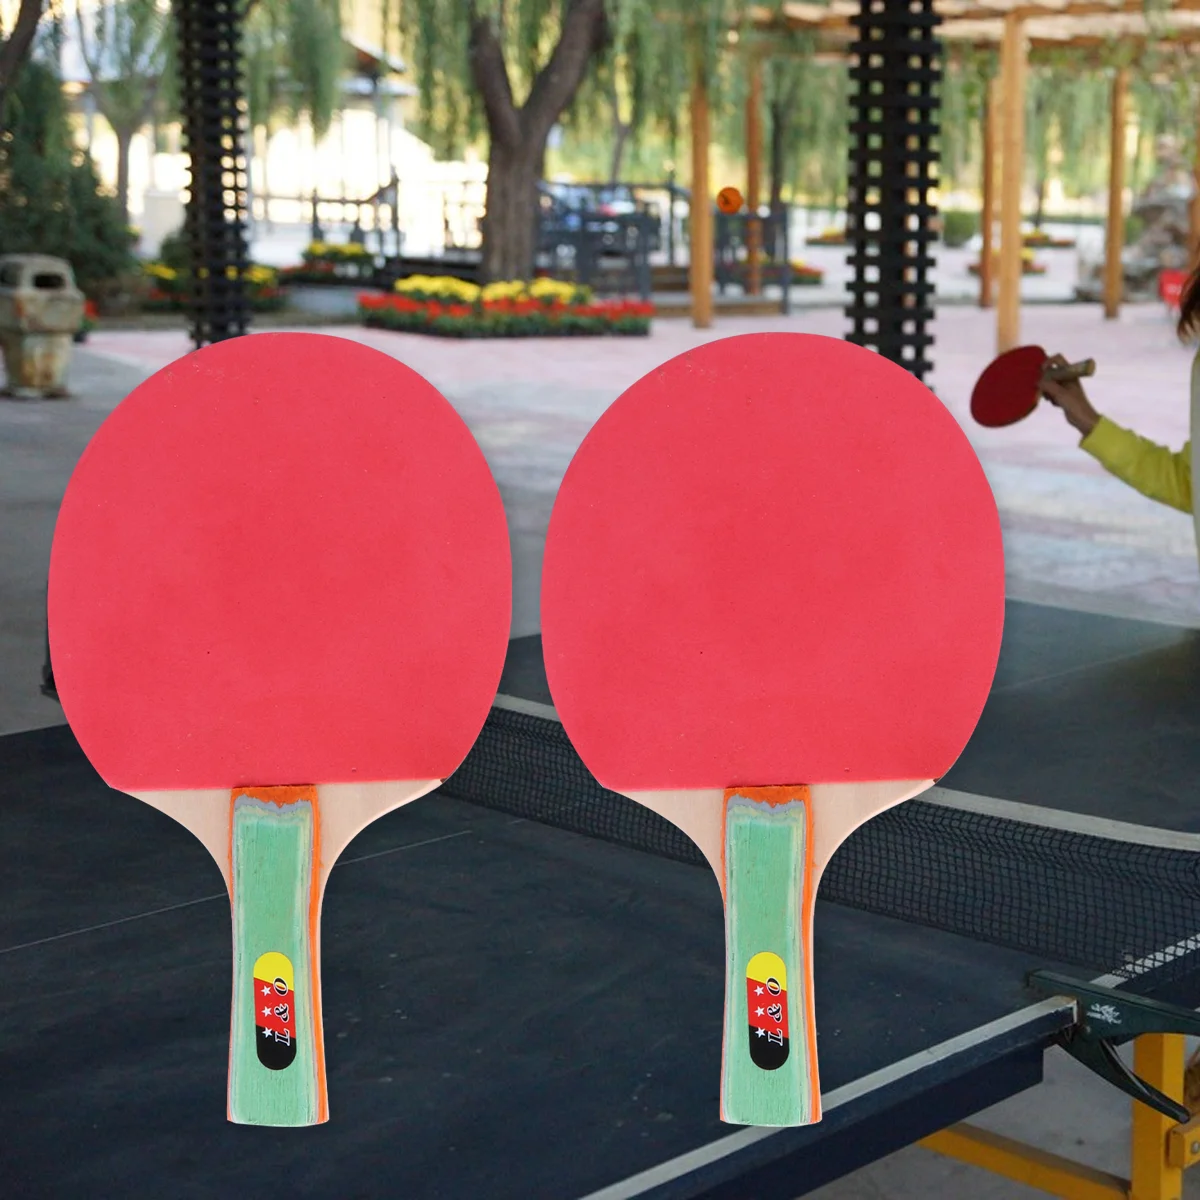 

2-спортивная ракетка для настольного тенниса, в комплекте профессиональные ракетки для понга и мячи